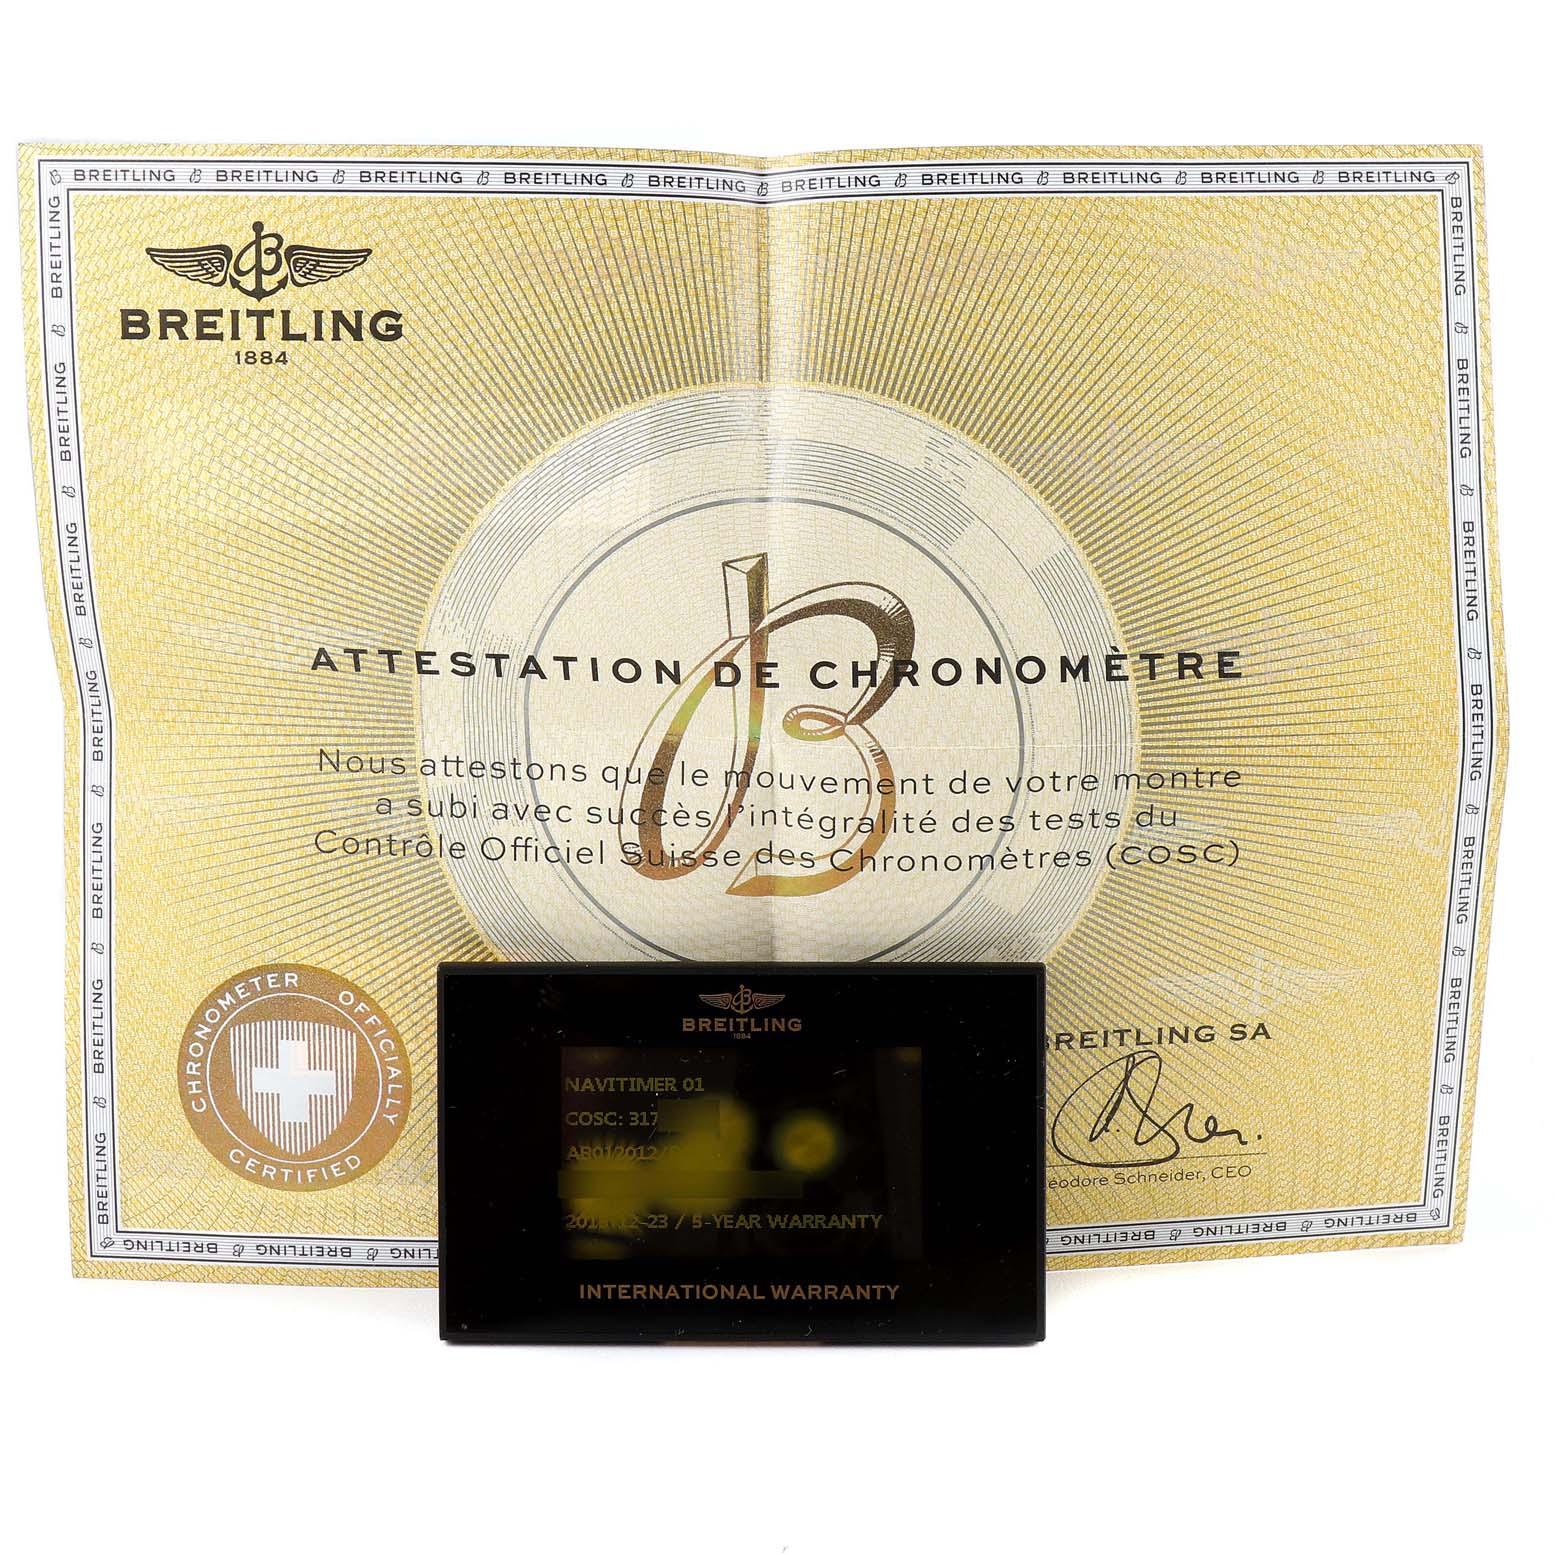 Breitling Navitimer 01 Schwarzes Zifferblatt Stahl Herrenuhr AB0120 Box Card. Automatisches Chronometerwerk mit automatischem Aufzug, offiziell zertifiziert. Chronographen-Funktion. Gehäuse aus Edelstahl mit einem Durchmesser von 43.0 mm.